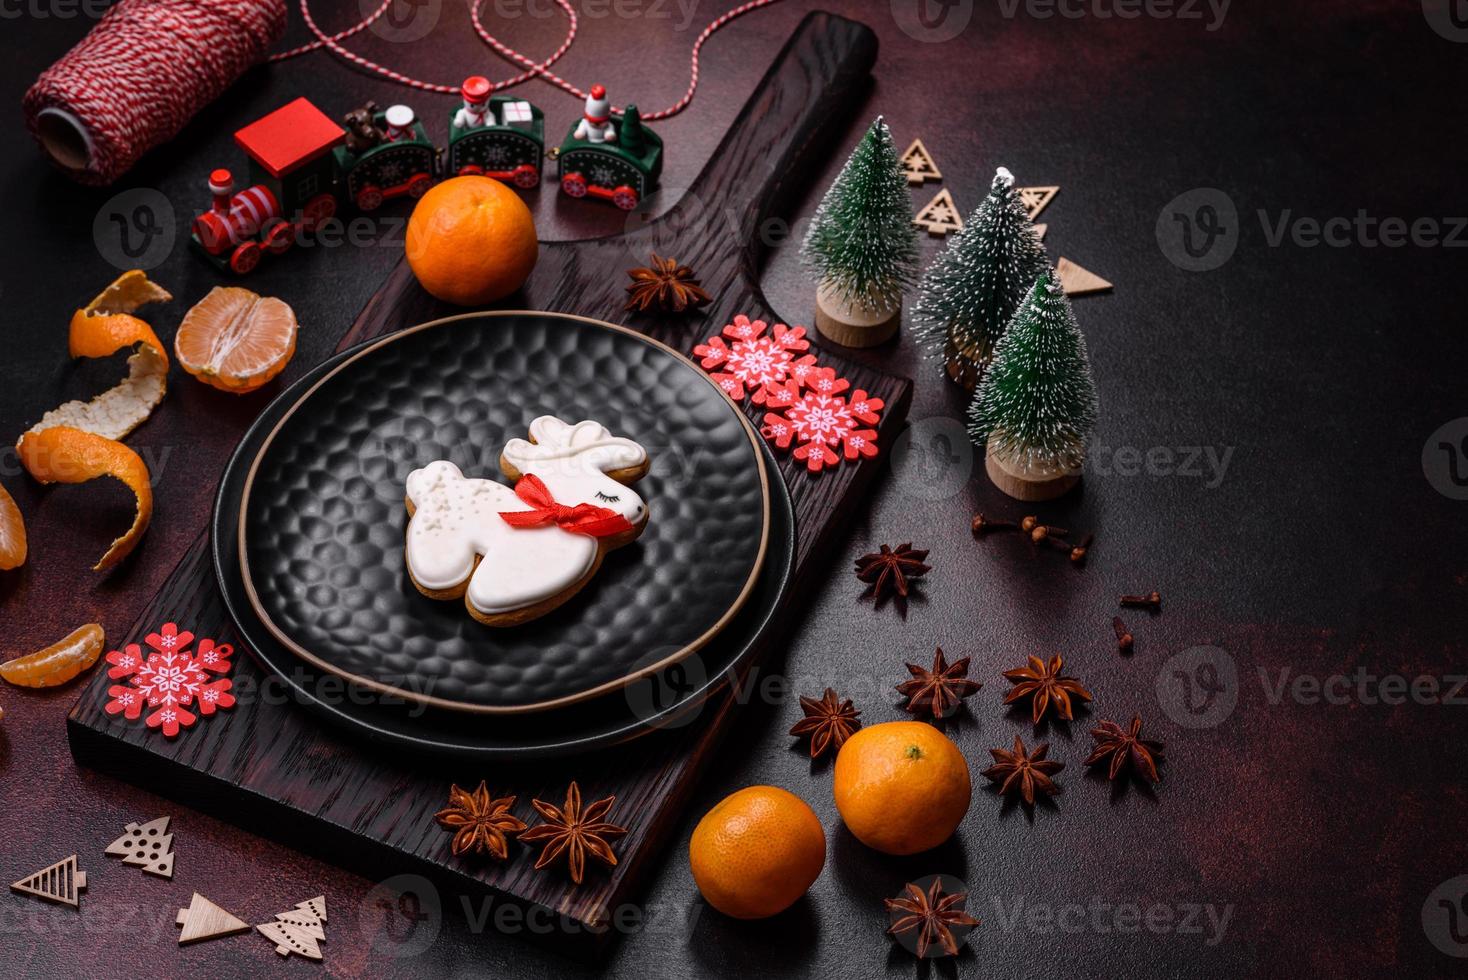 hermosas decoraciones navideñas con juguetes navideños, clementinas y pan de jengibre foto